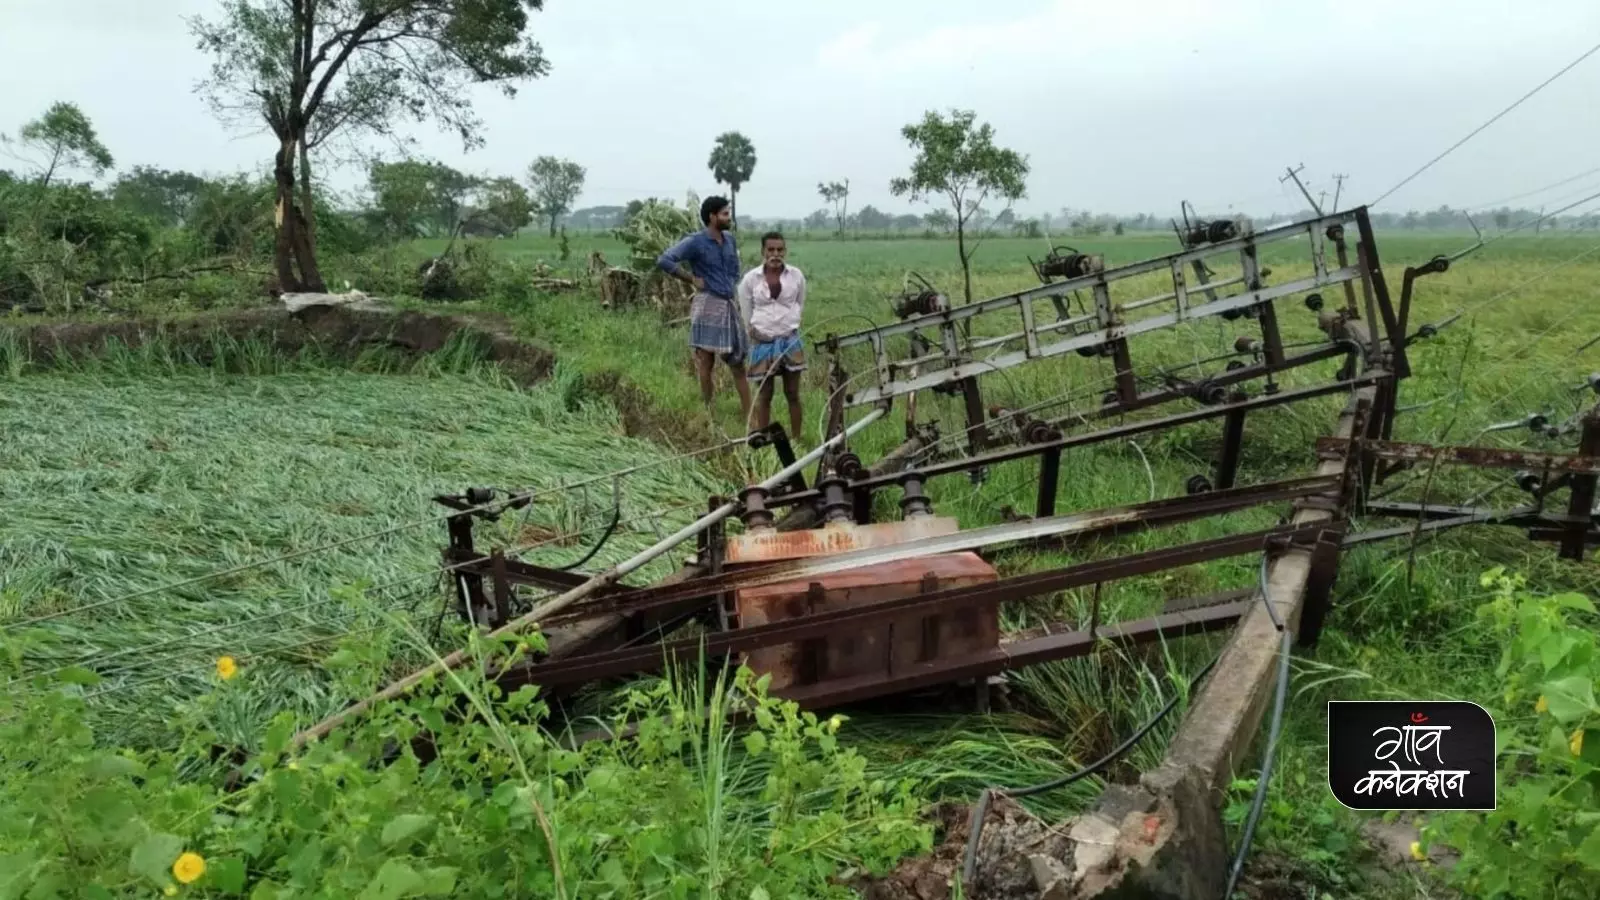 पीएम फसल बीमा योजनाः तंजावुर में चक्रवात निवार से अपनी फसल गंवाने वाले किसानों को अभी तक नहीं मिला मुआवजा